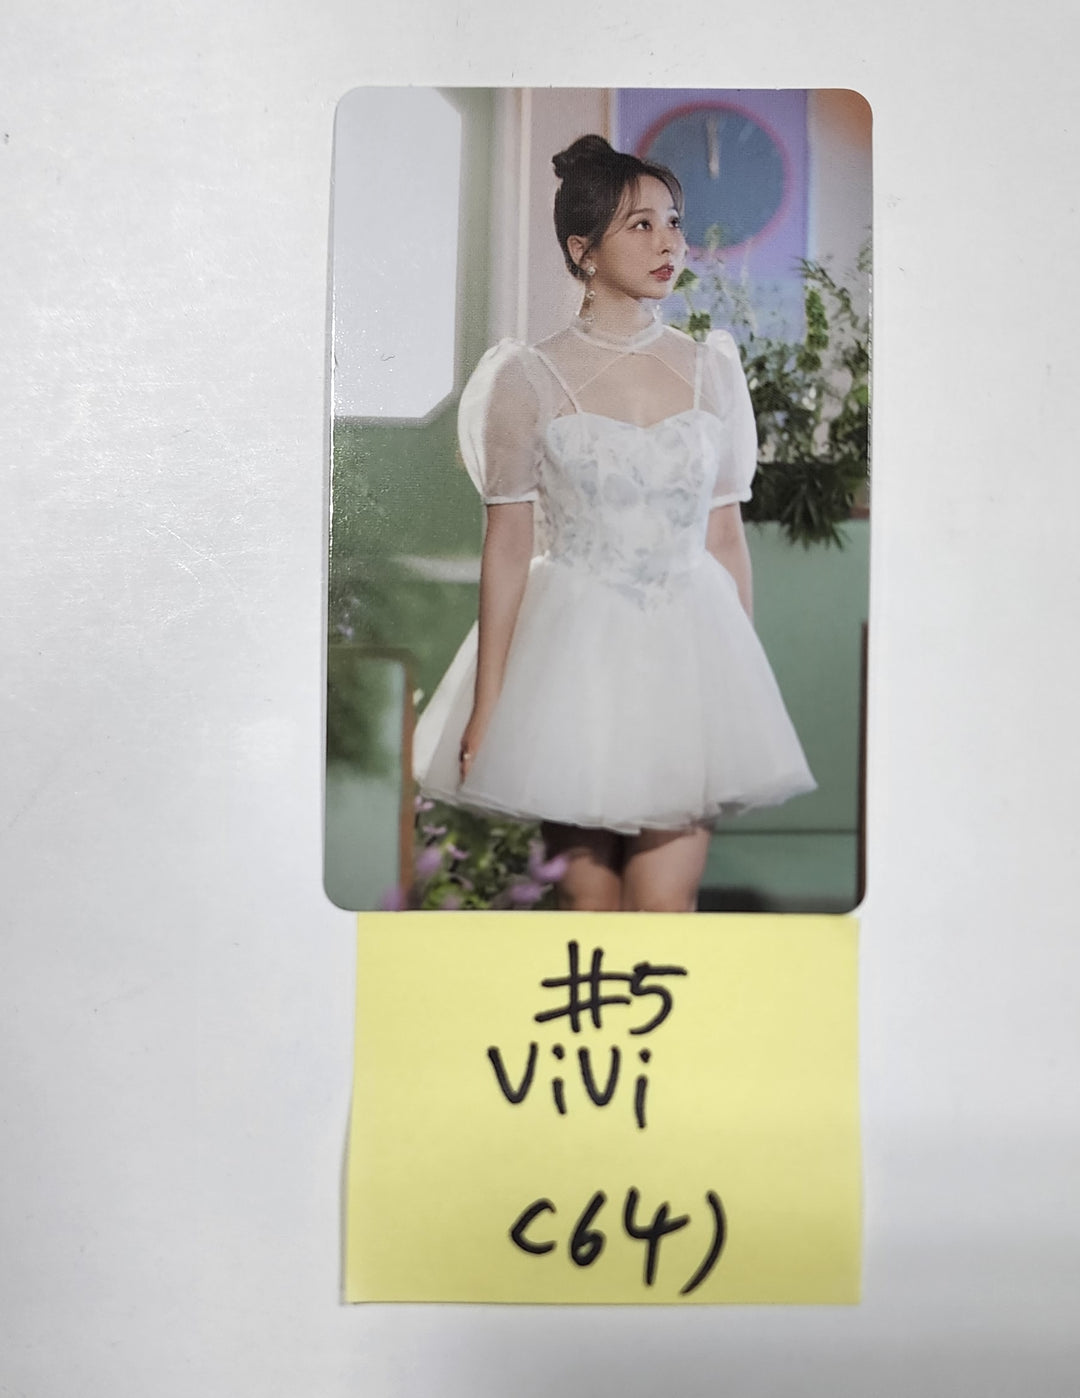 이달의 소녀 "Flip That" 여름 스페셜 미니앨범 - 공식 AR 포토카드